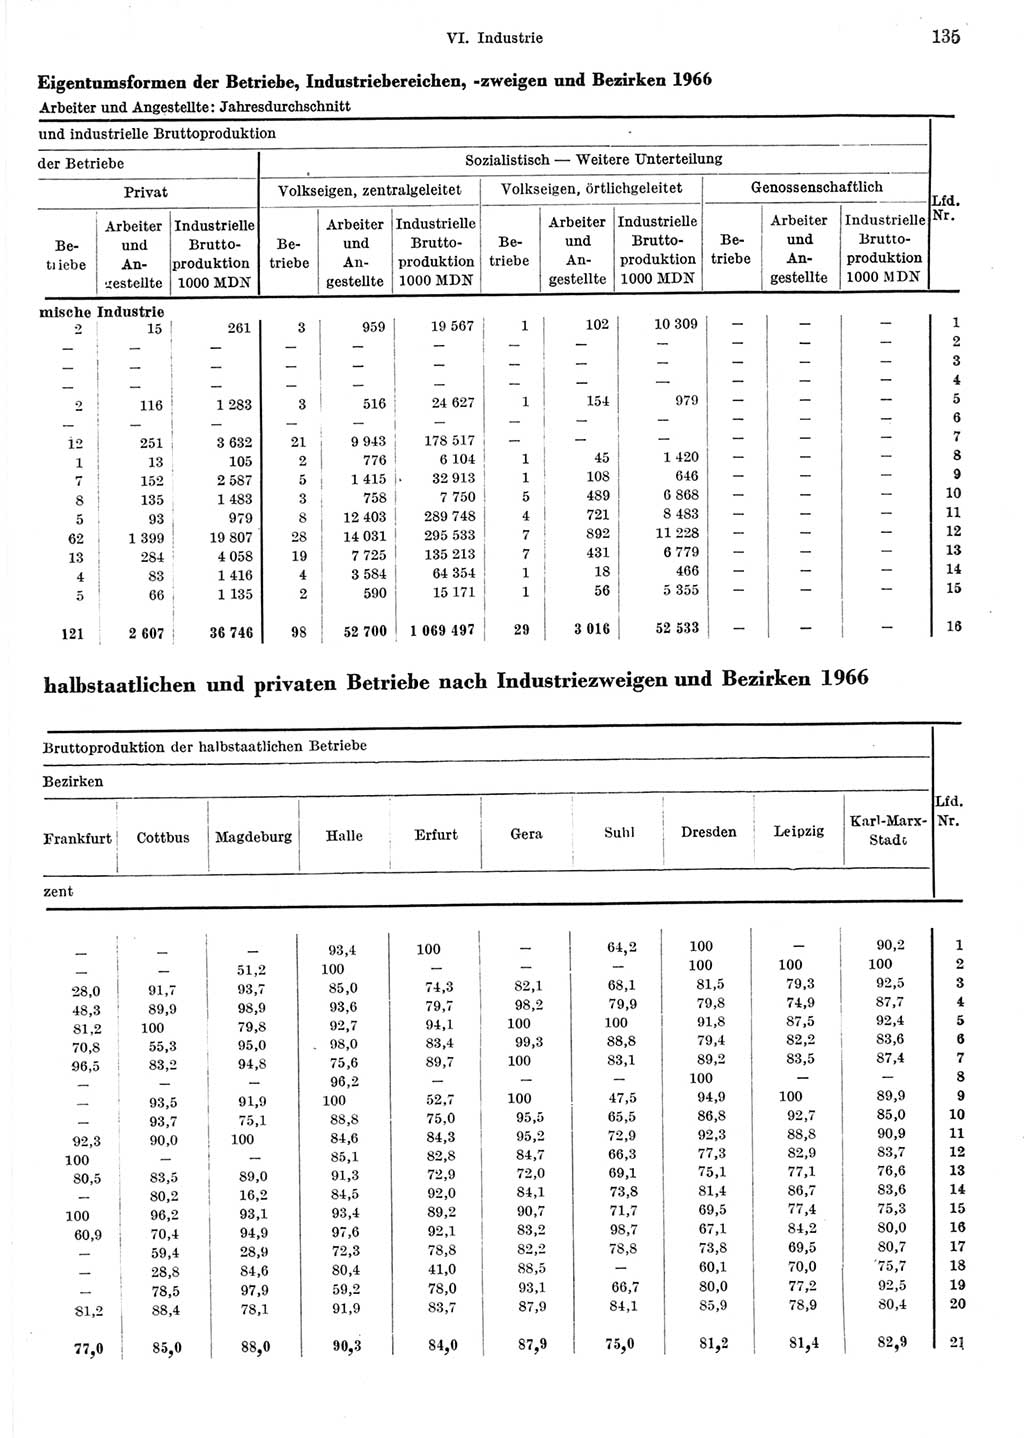 Statistisches Jahrbuch der Deutschen Demokratischen Republik (DDR) 1967, Seite 135 (Stat. Jb. DDR 1967, S. 135)